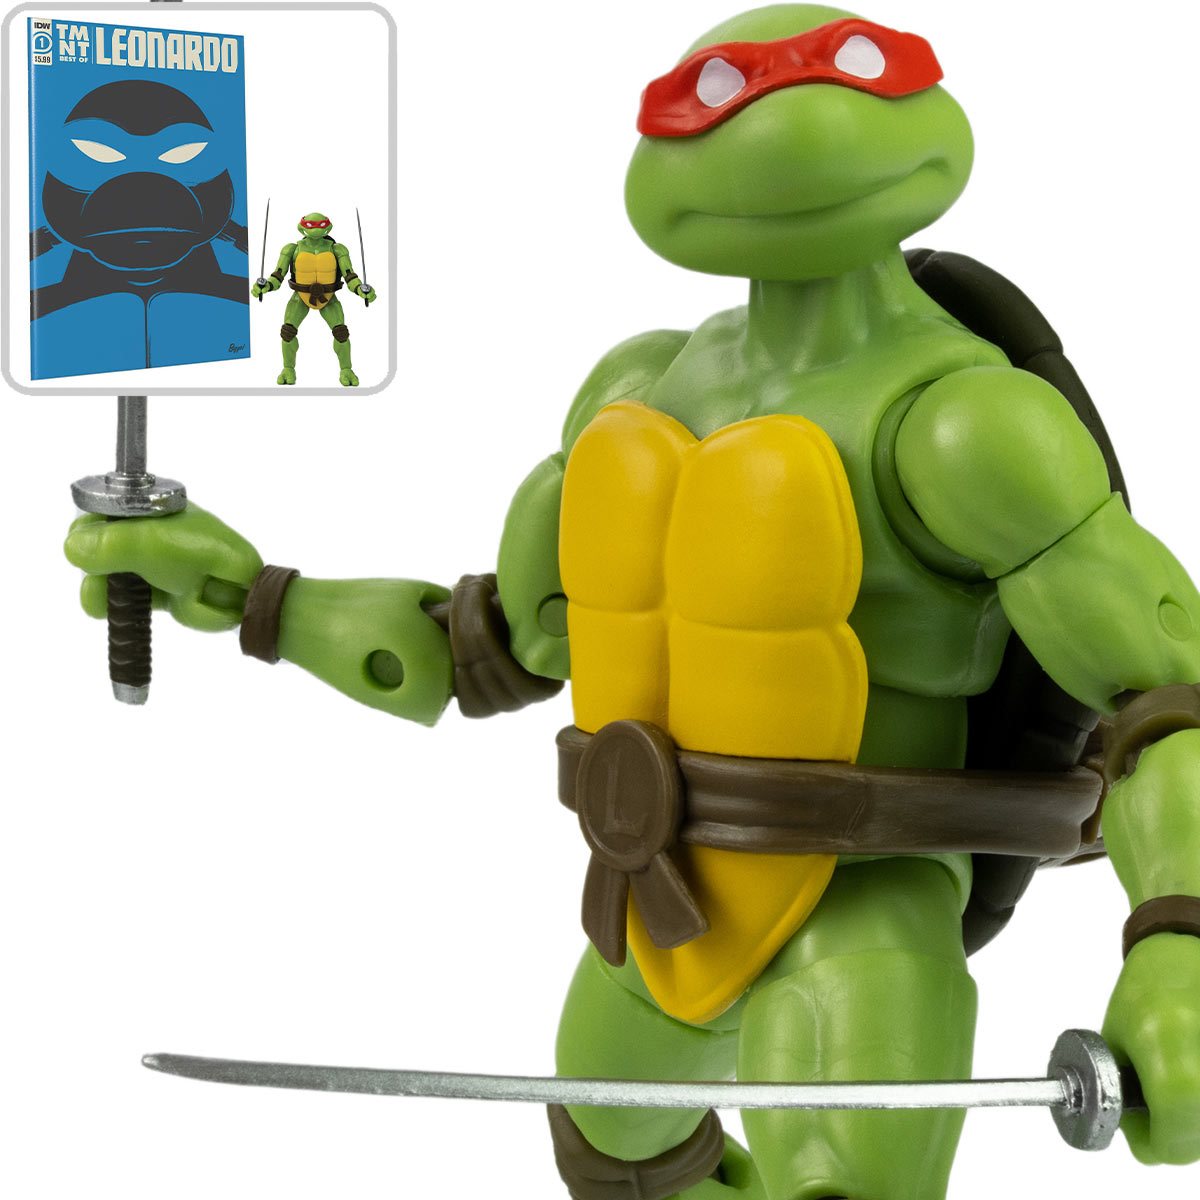 Teenage Mutant Ninja Turtles Best of Leonardo IDW Comic Book and 5